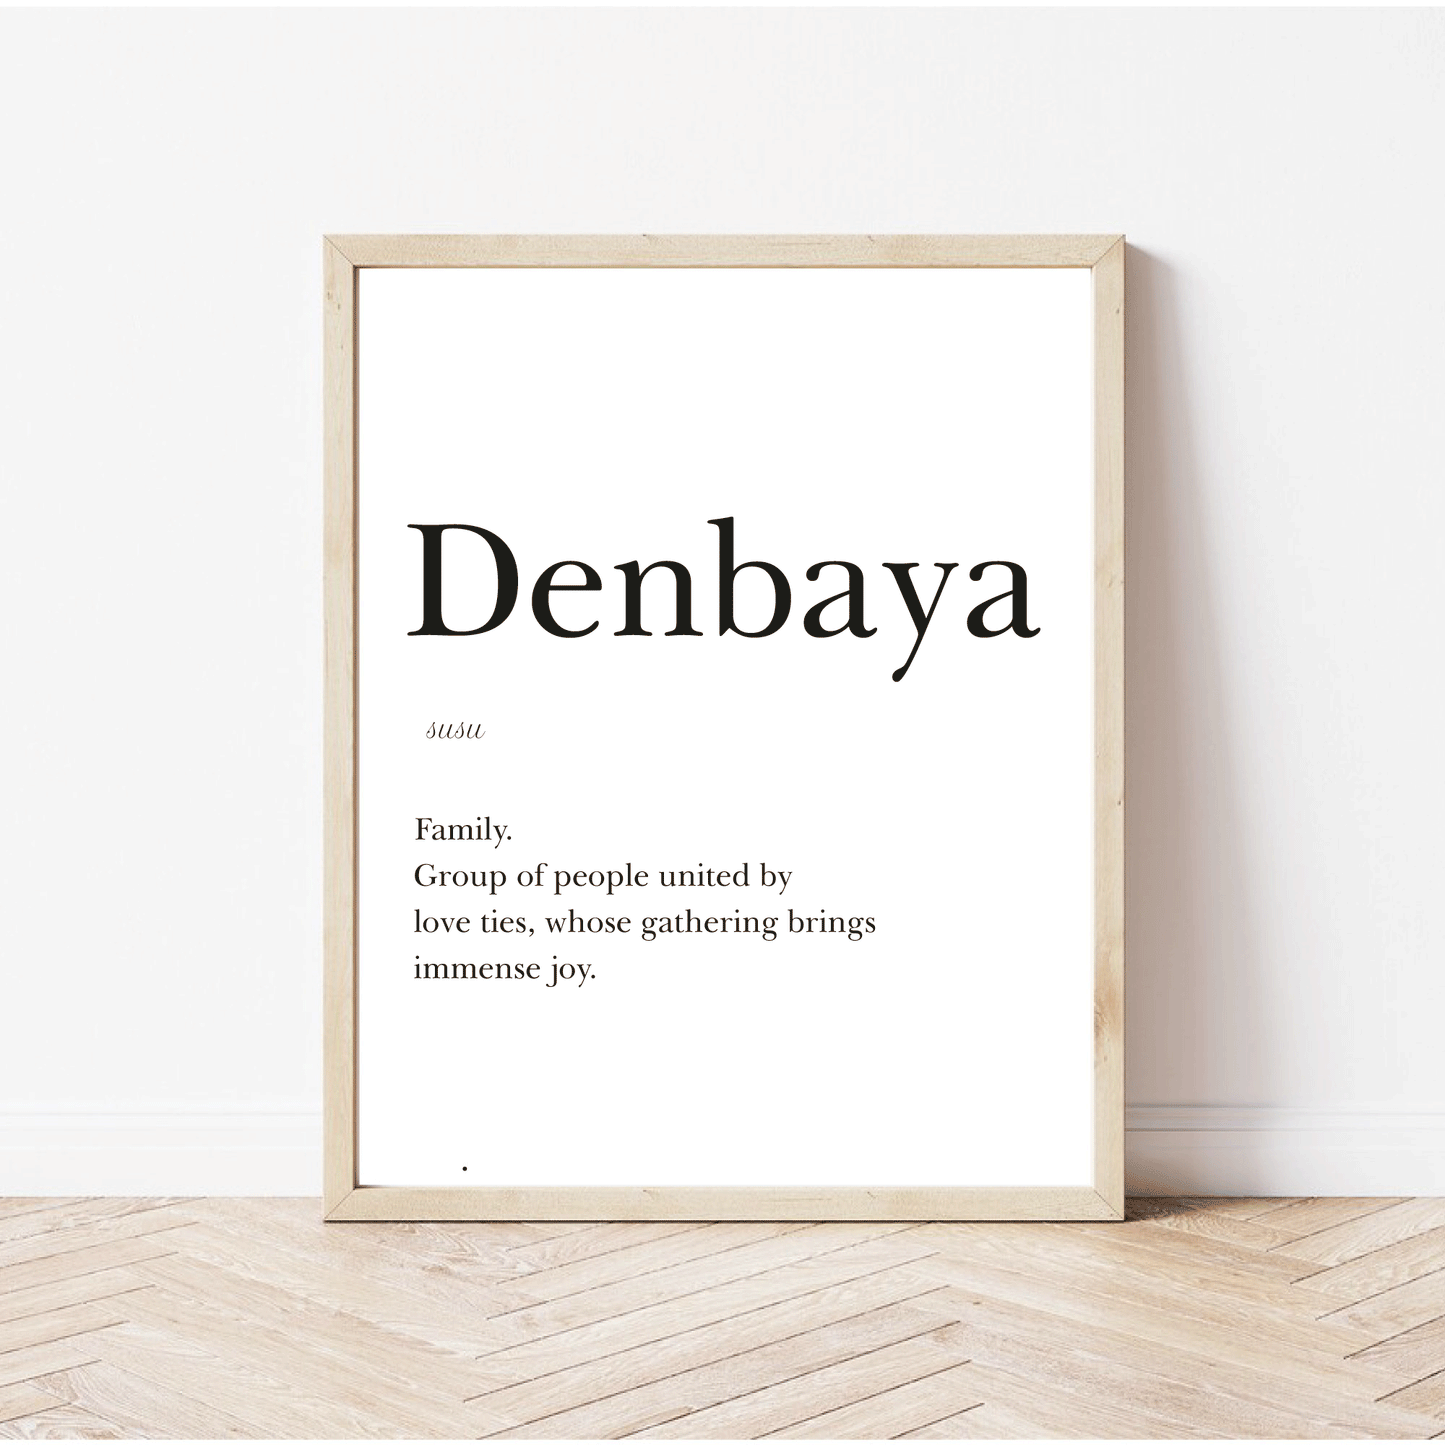 Family in Susu, "Denbaya", English text - 30x40 cm